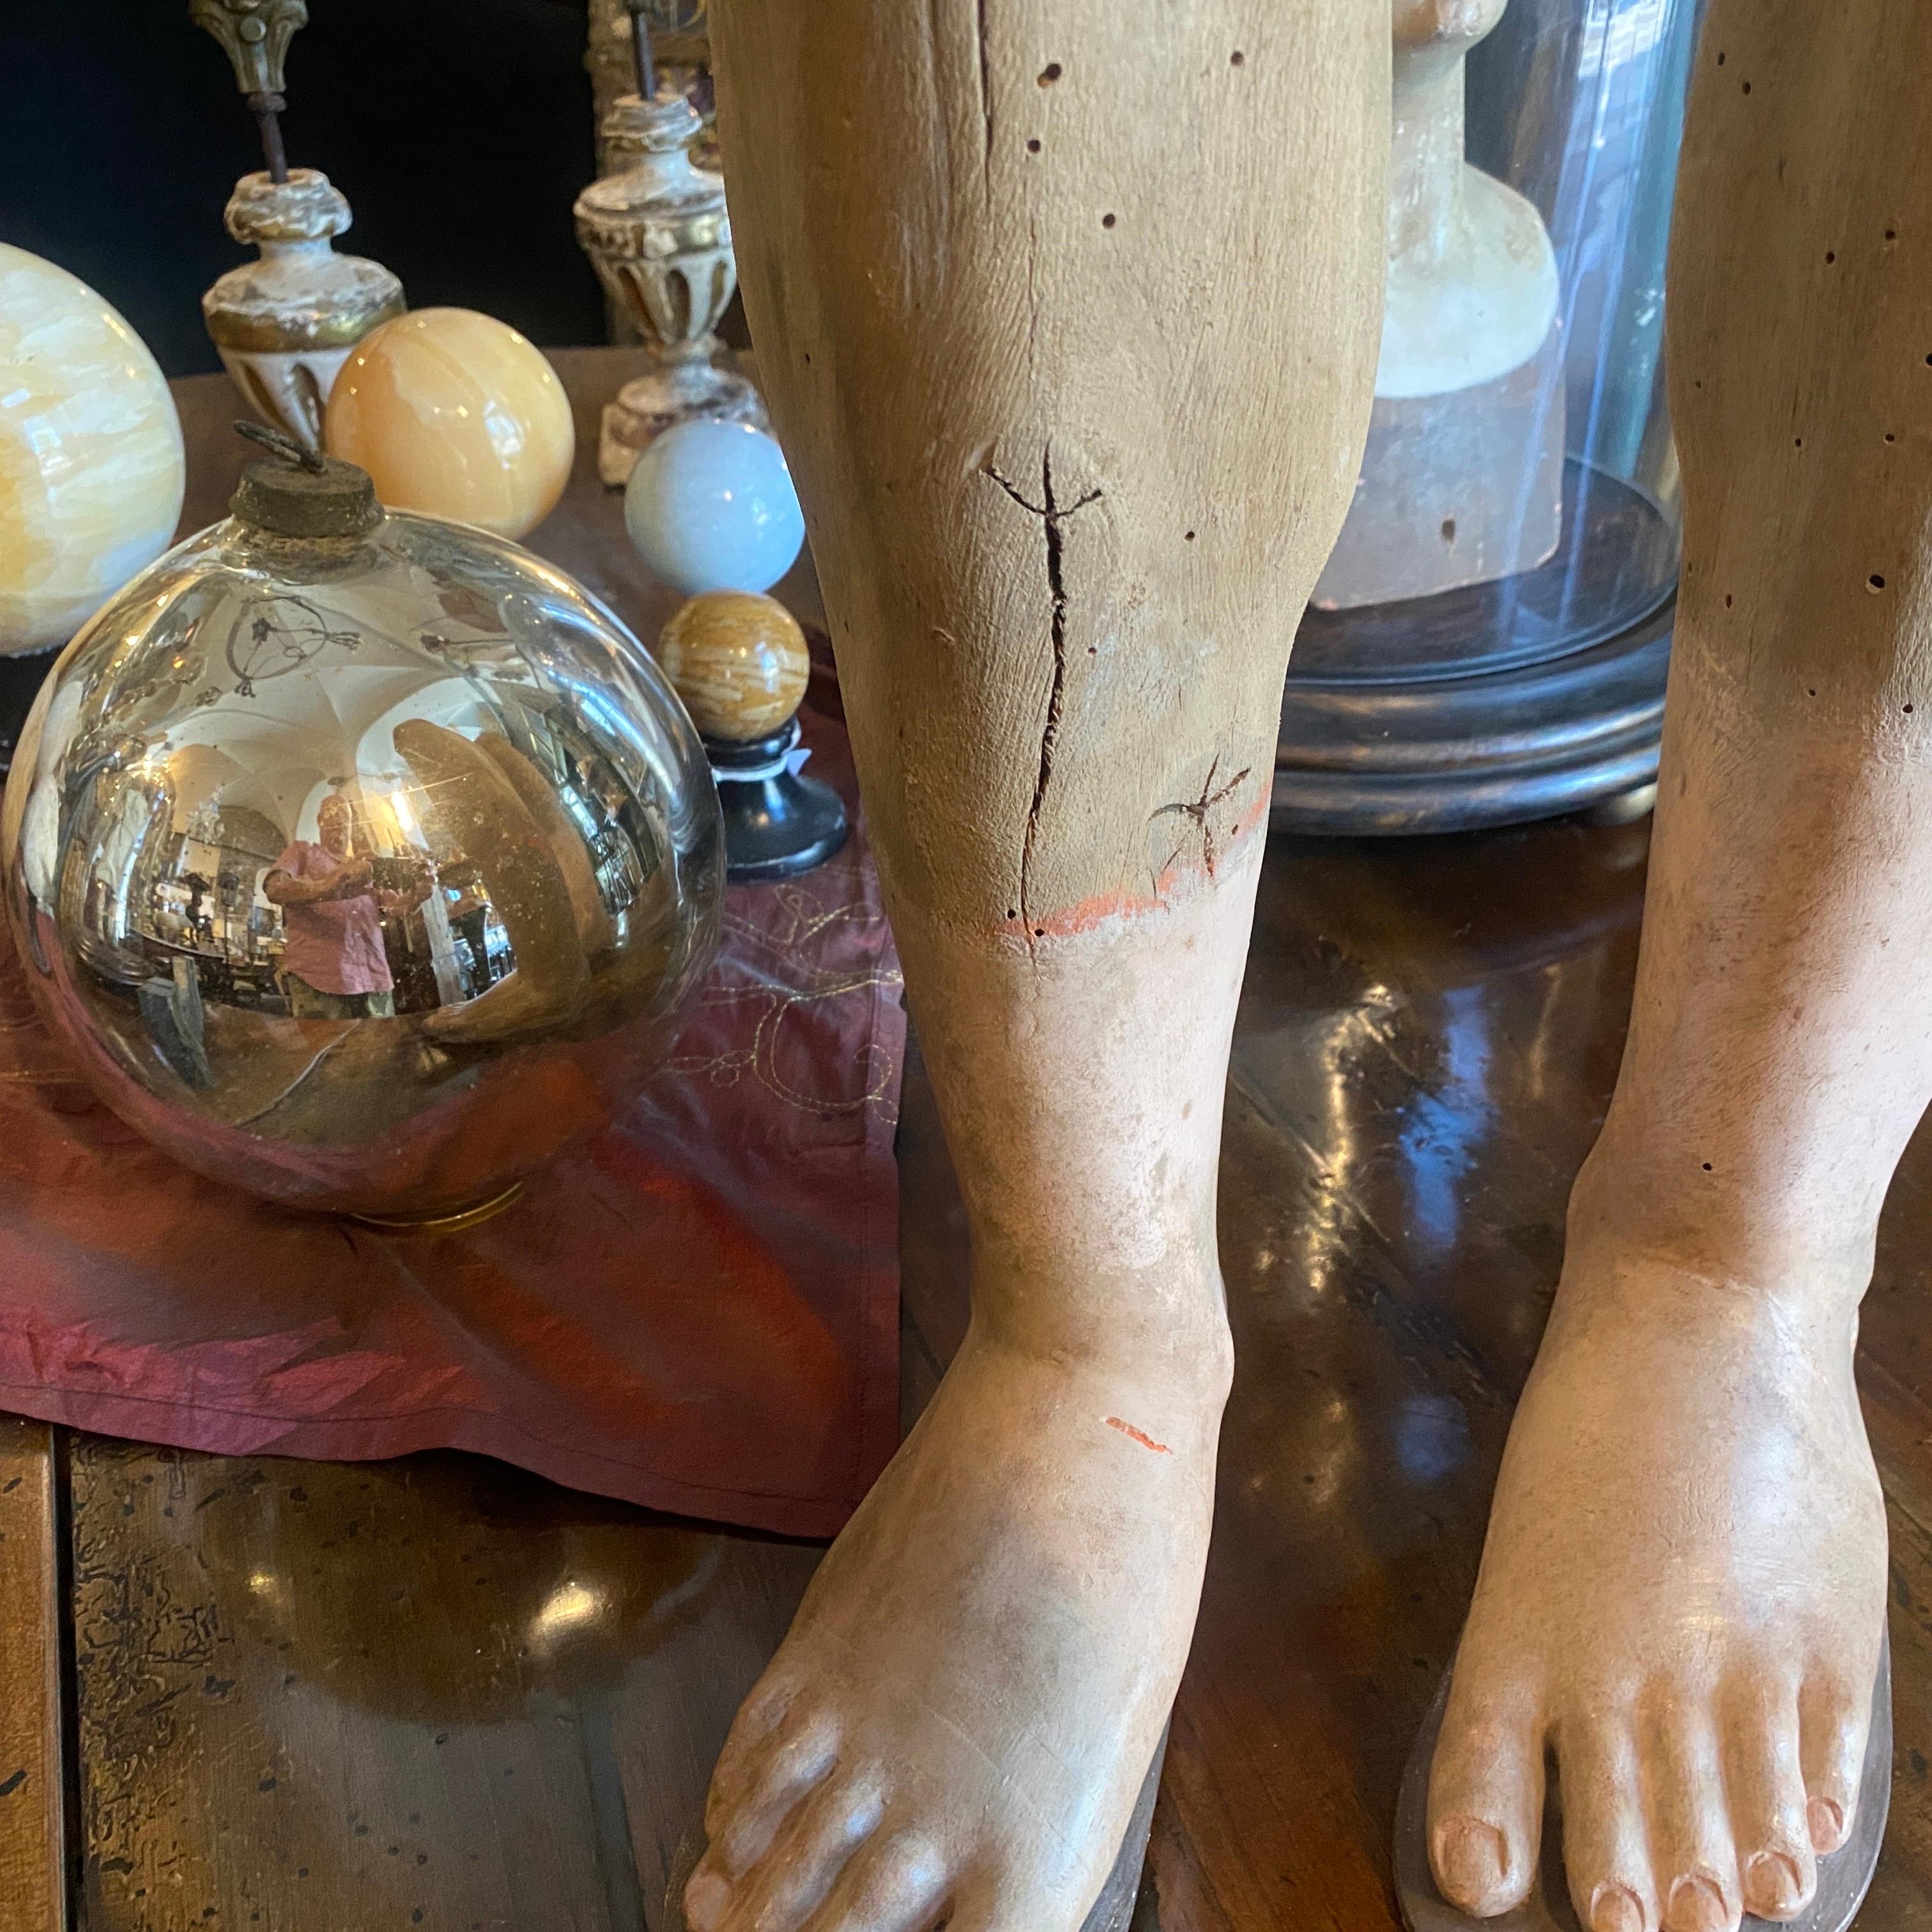 Deux pieds en bois faisant partie d'un mannequin antique en bois et chanvre rembourré. Les parties en bois sont uniquement les pieds, les mains et la tête. Ces pieds en état original peuvent être utilisés comme décorations.